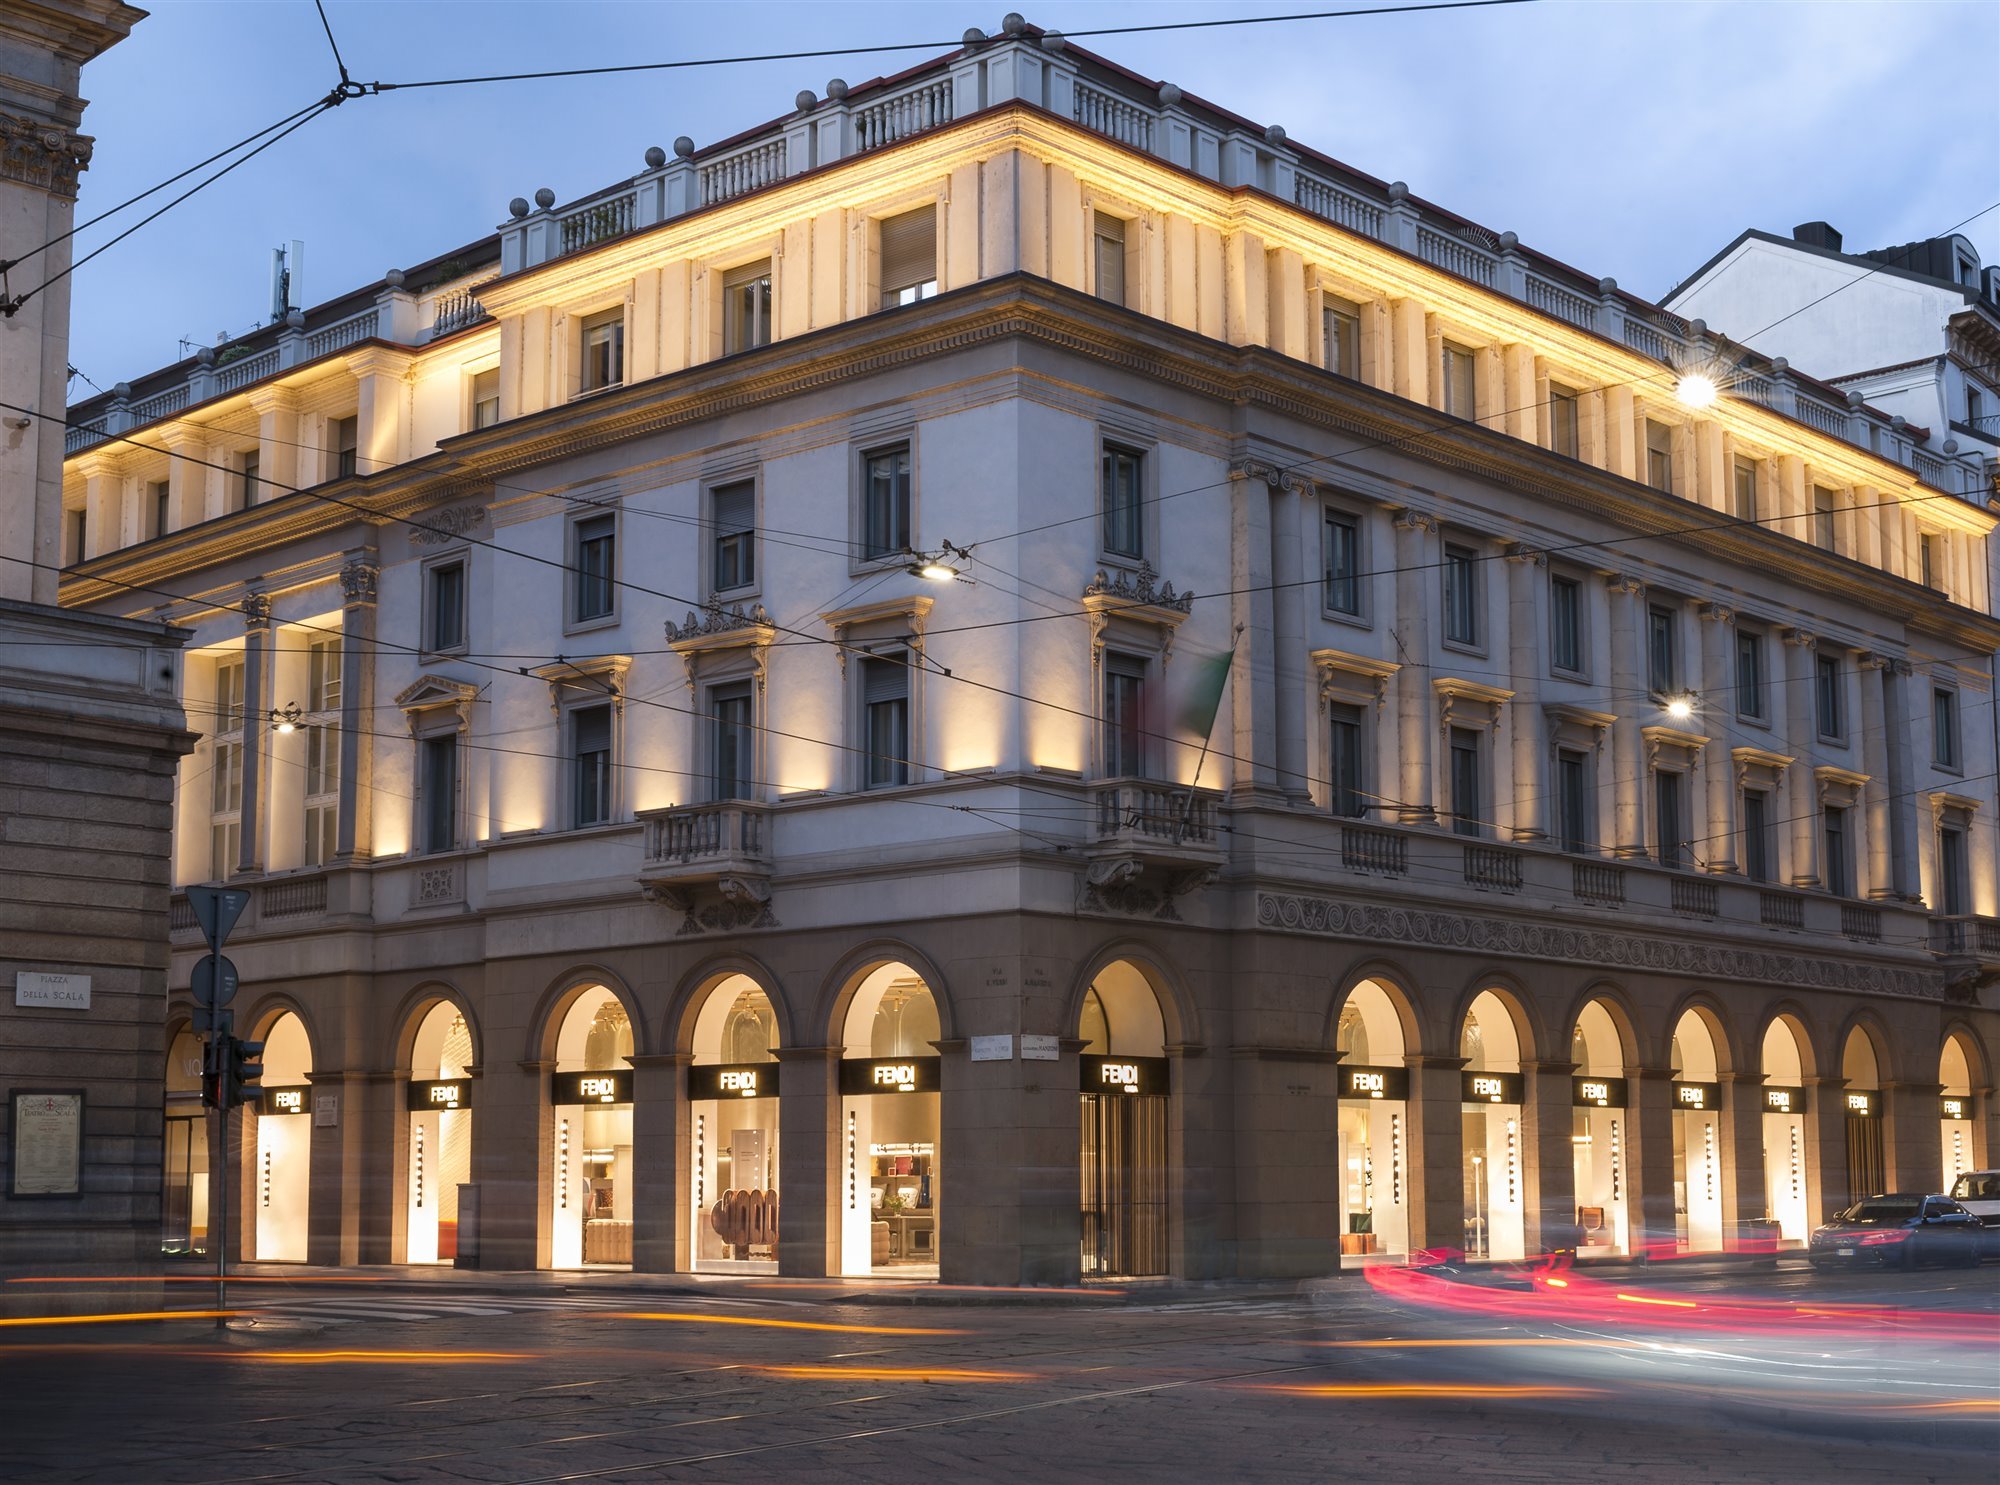 La nueva tienda de Fendi Casa en Milán